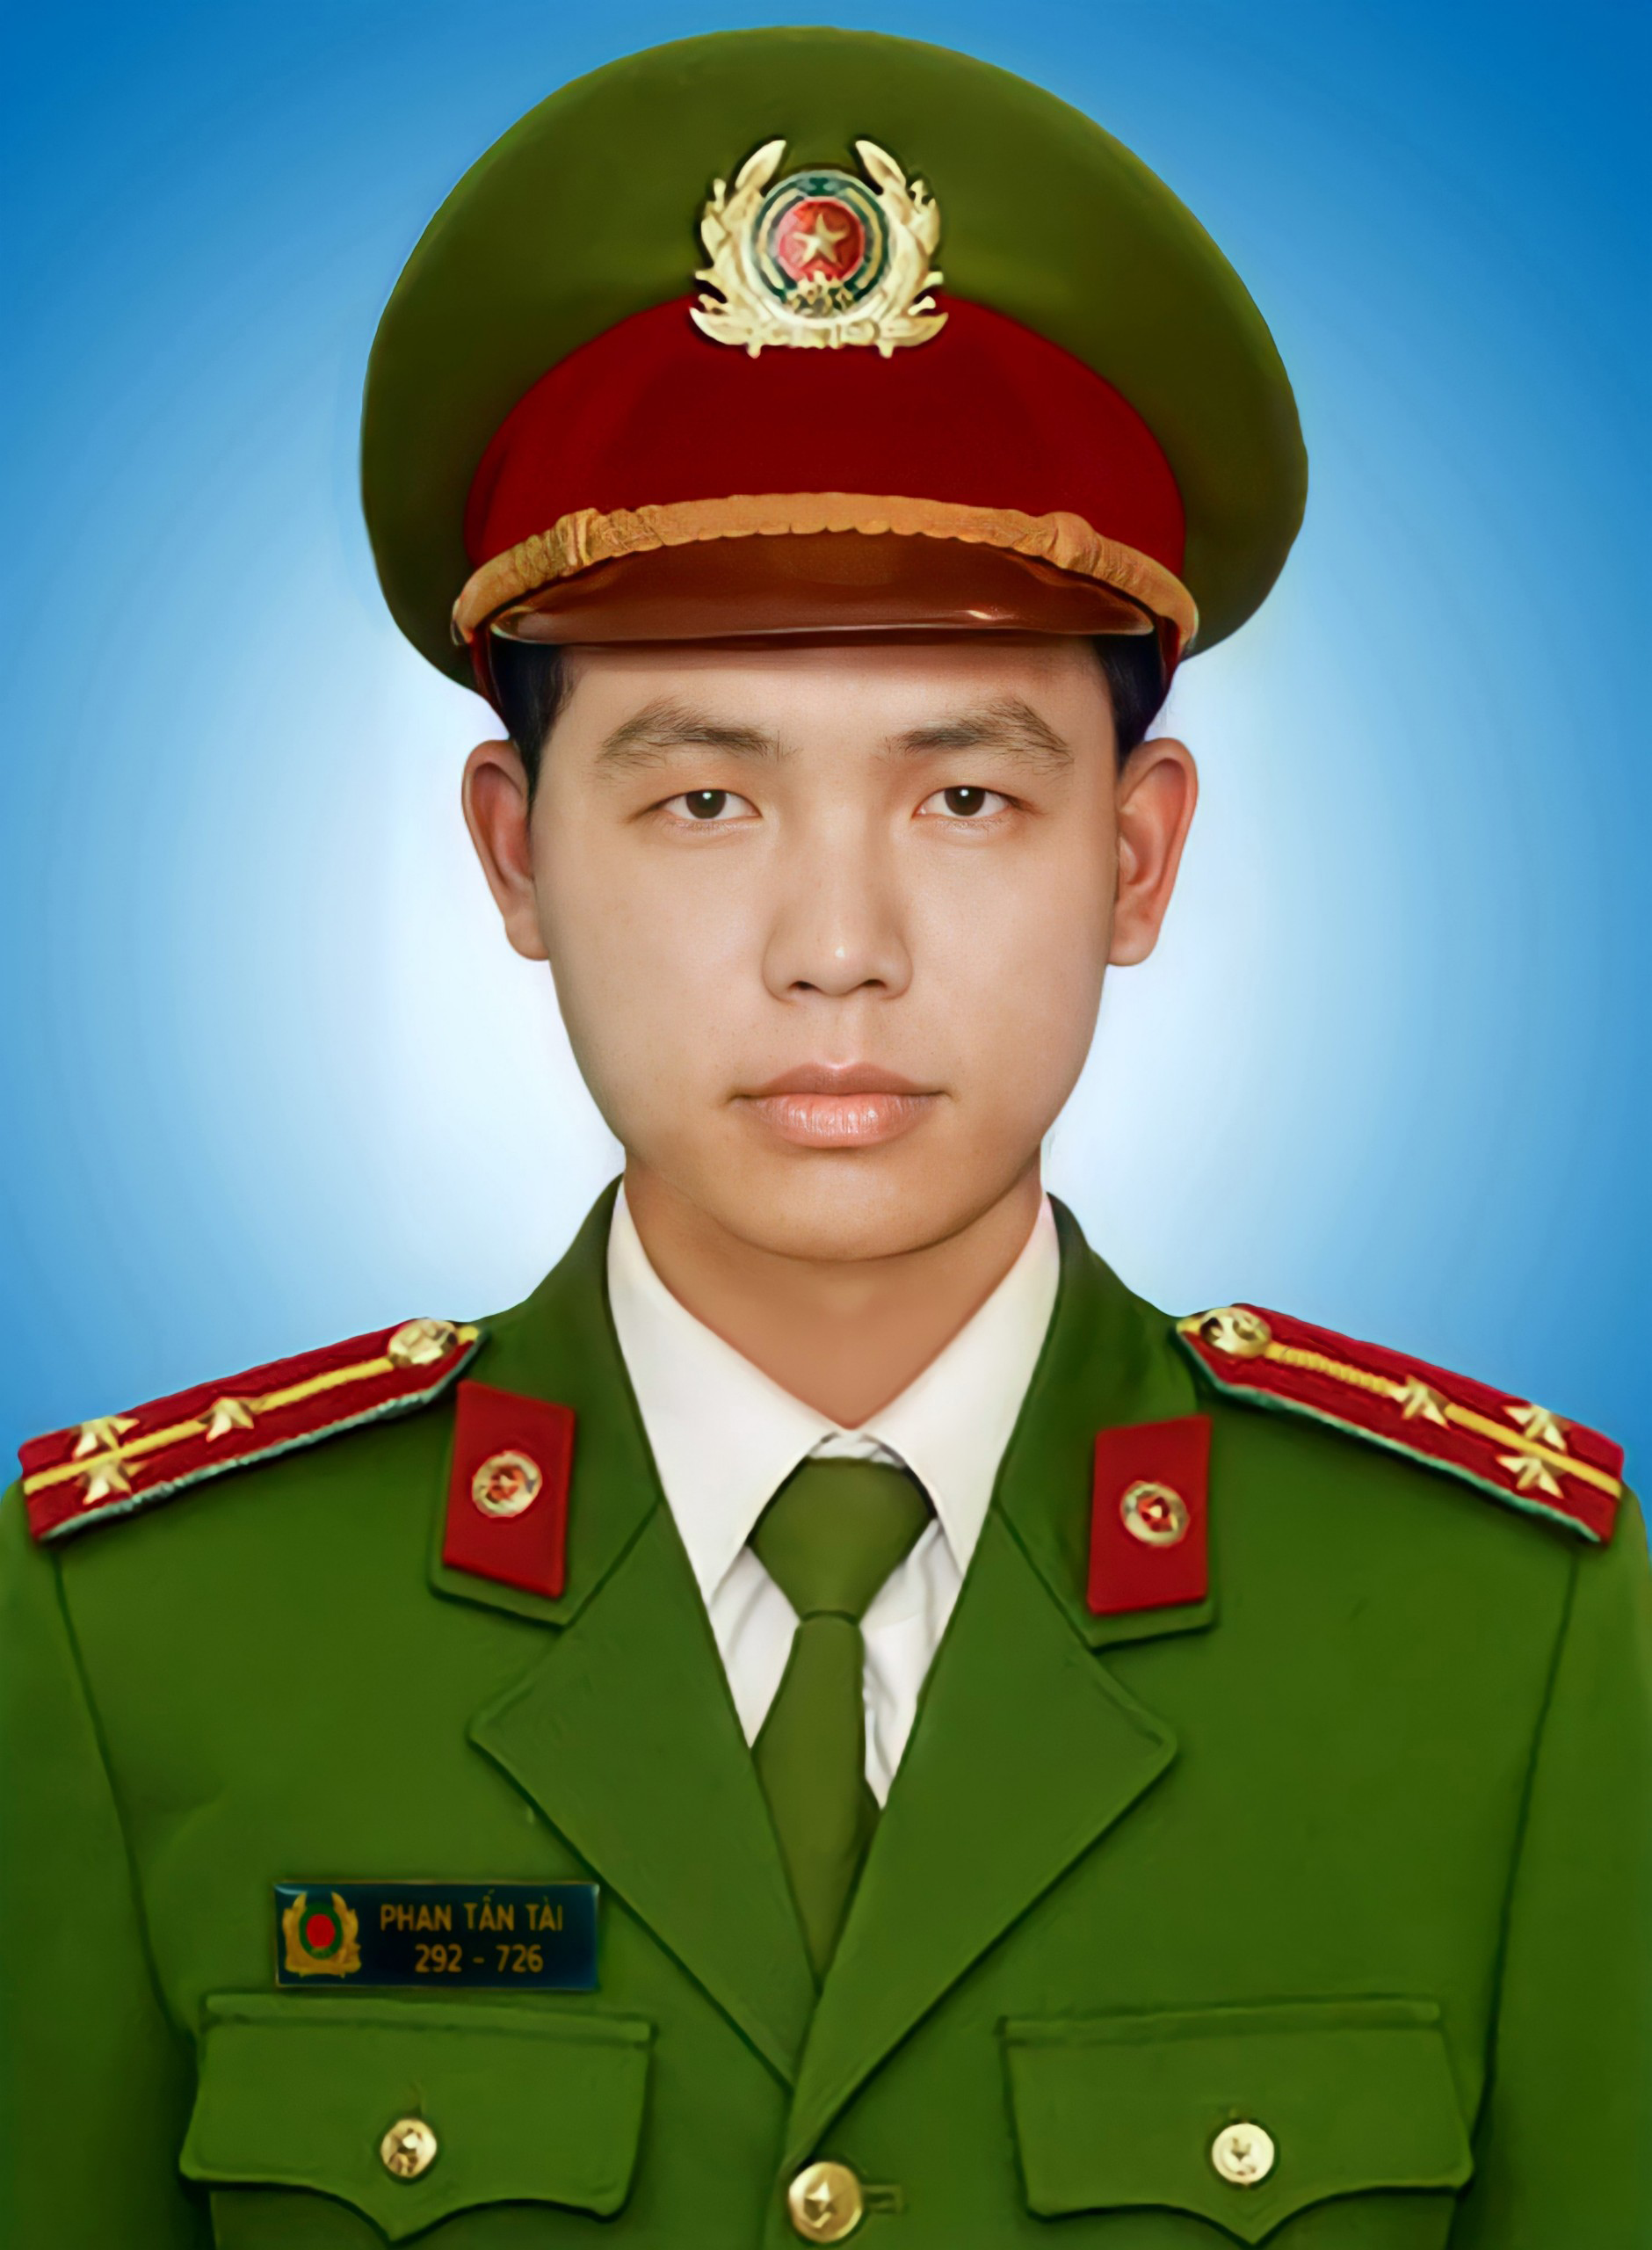 Thủ tướng đề nghị truy tặng Huân chương Chiến công cho Thượng úy Phan Tấn Tài - Ảnh 1.